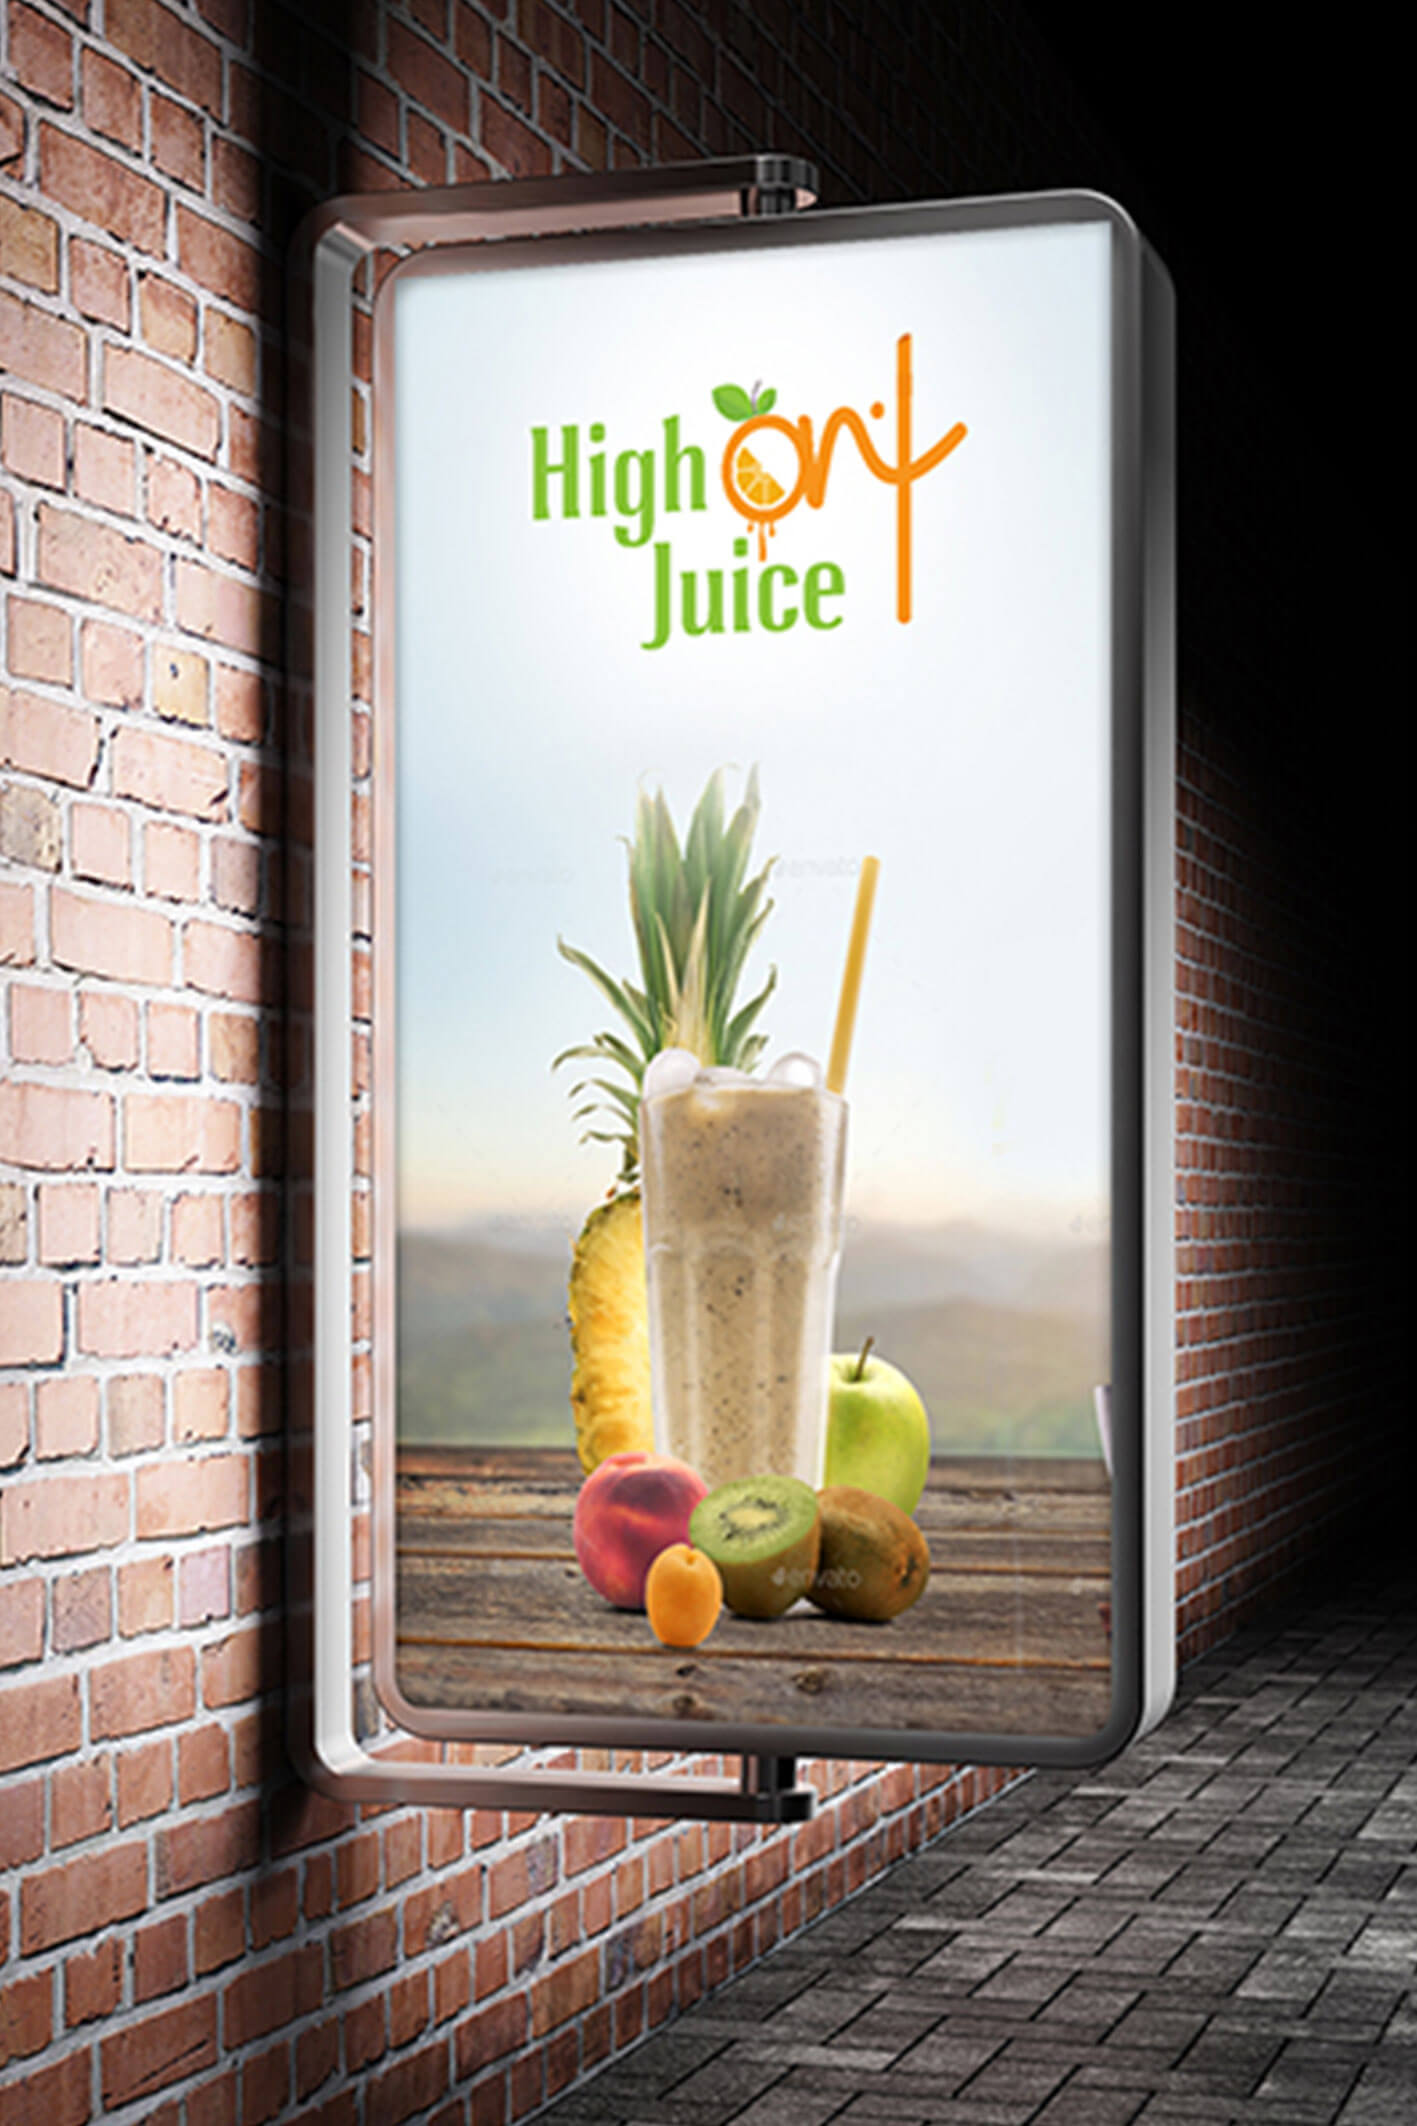 High on Juice